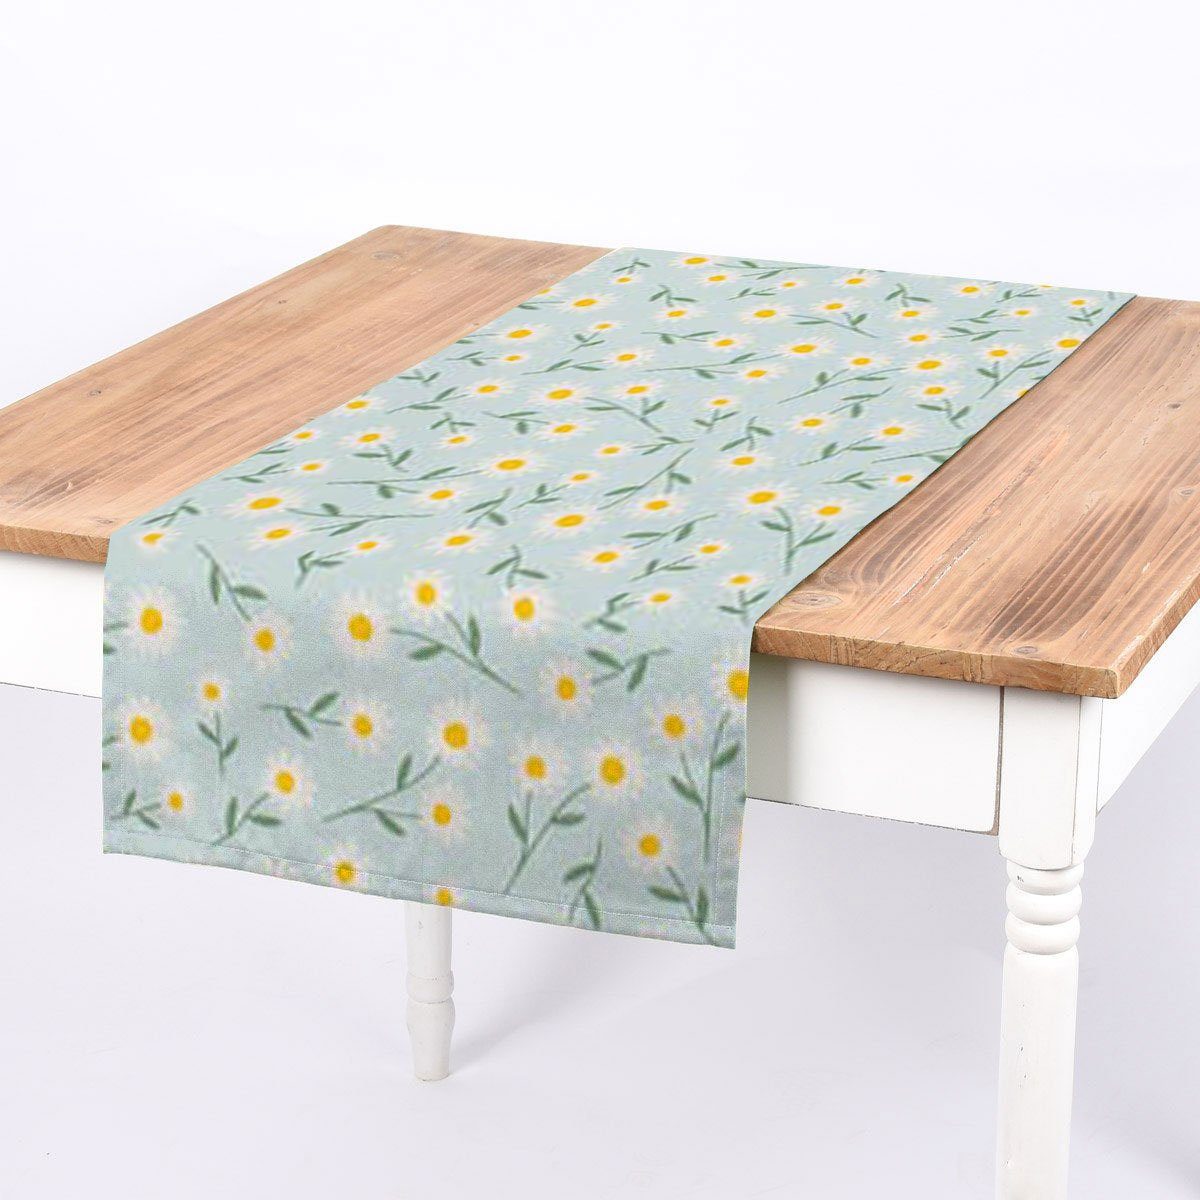 SCHÖNER LEBEN. Tischläufer SCHÖNER LEBEN. Tischläufer Gänseblümchen hellblau oder natur weiß, handmade hellblauer Hintergrund mit weiß-gelb-grünen Gänseblümchen